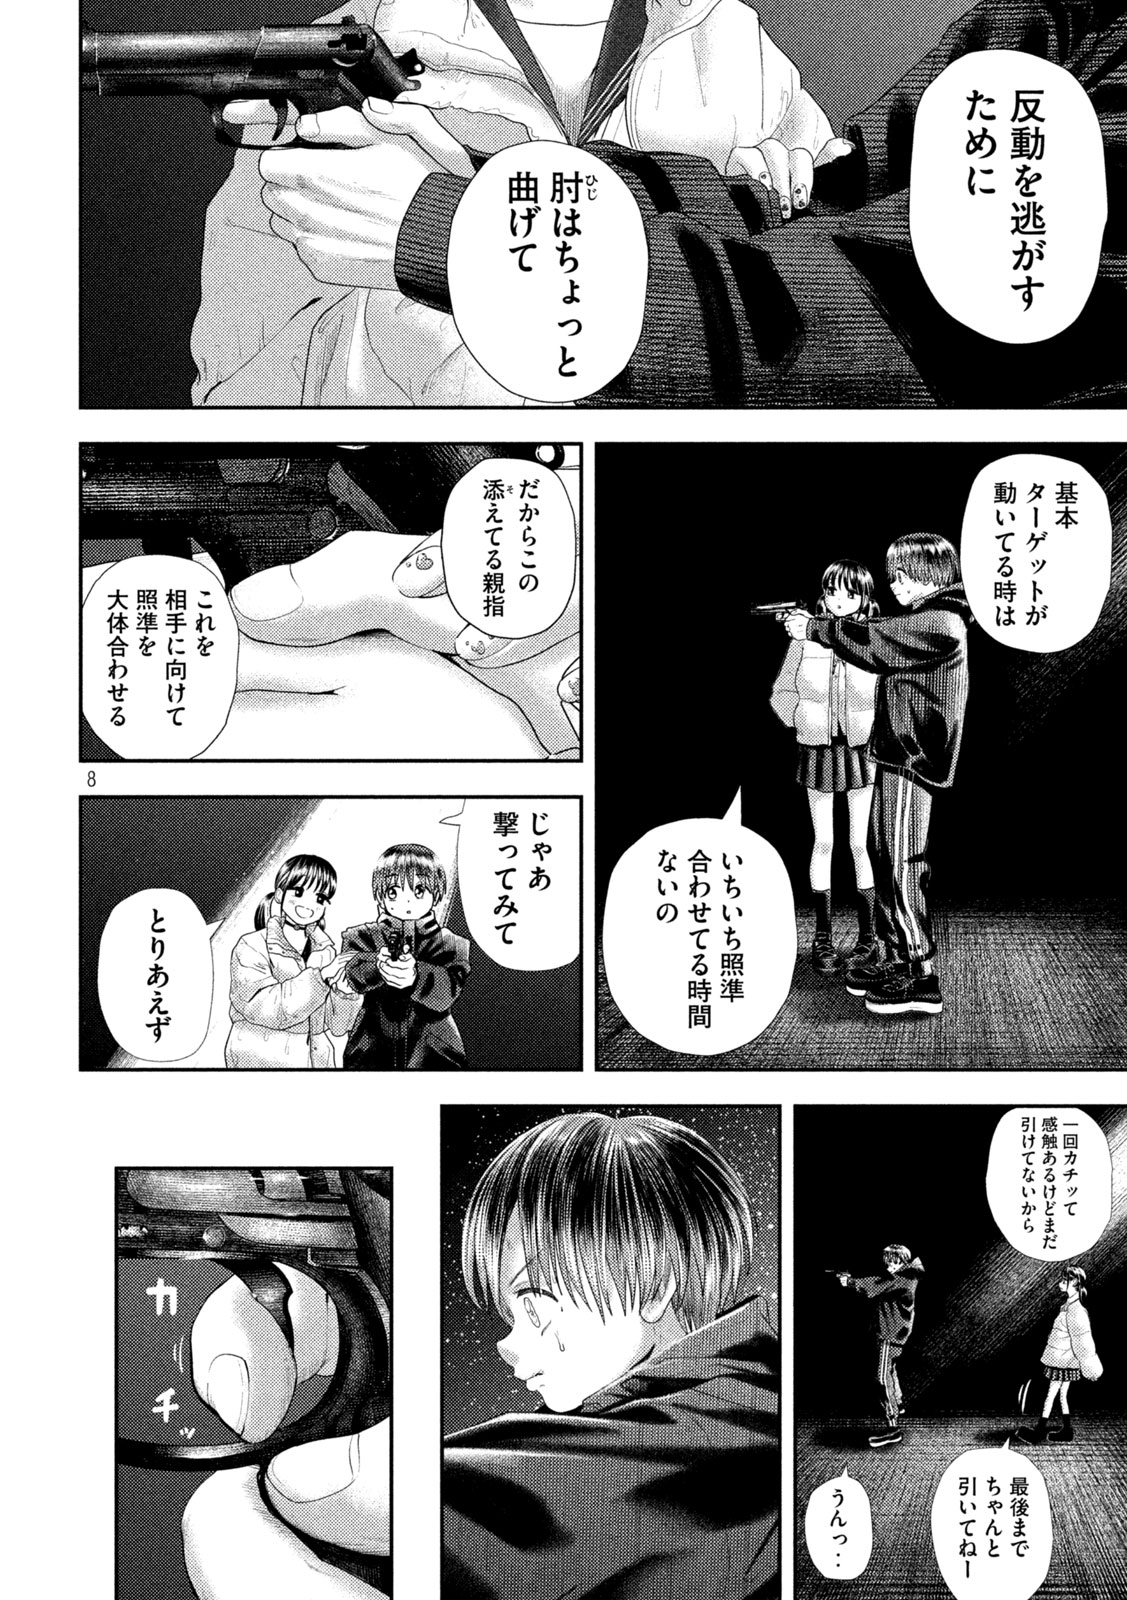 Nezumi no Koi - Chapter 32 - Page 8